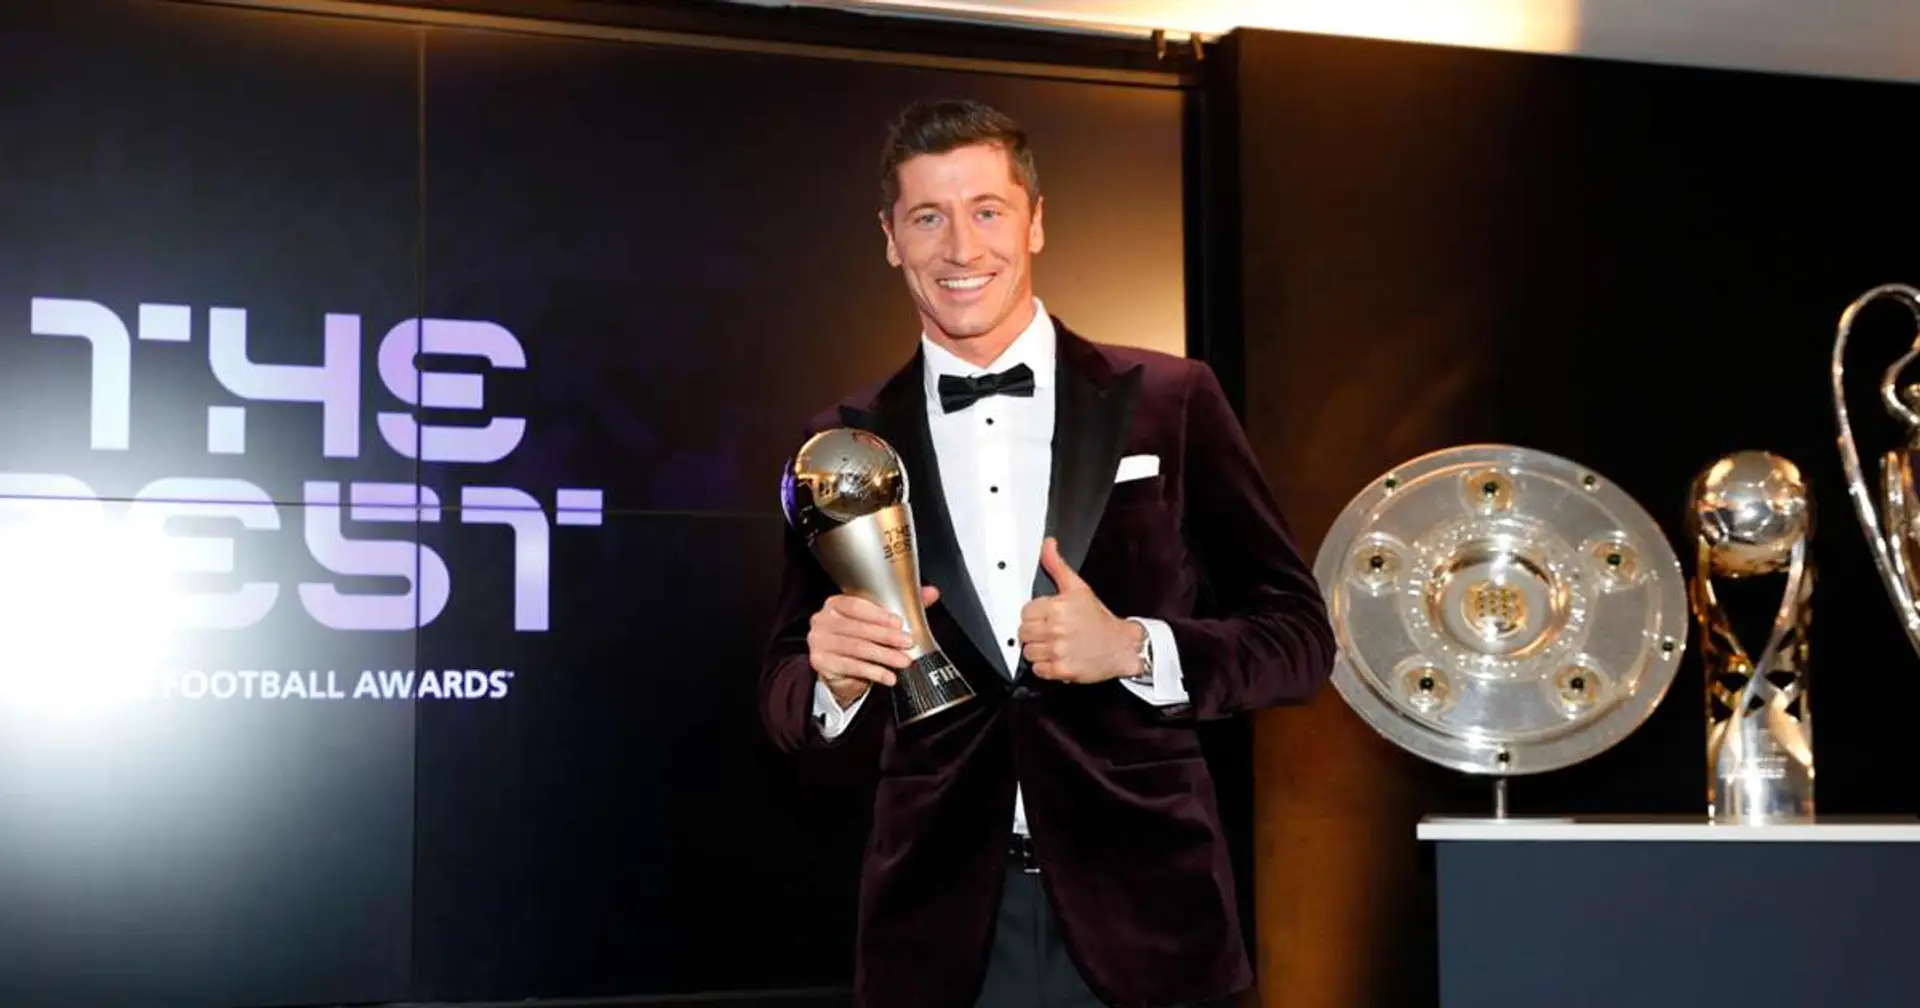 OFICIAL: Robert Lewandowski gana el premio al Mejor Jugador en ceremonia FIFA The Best